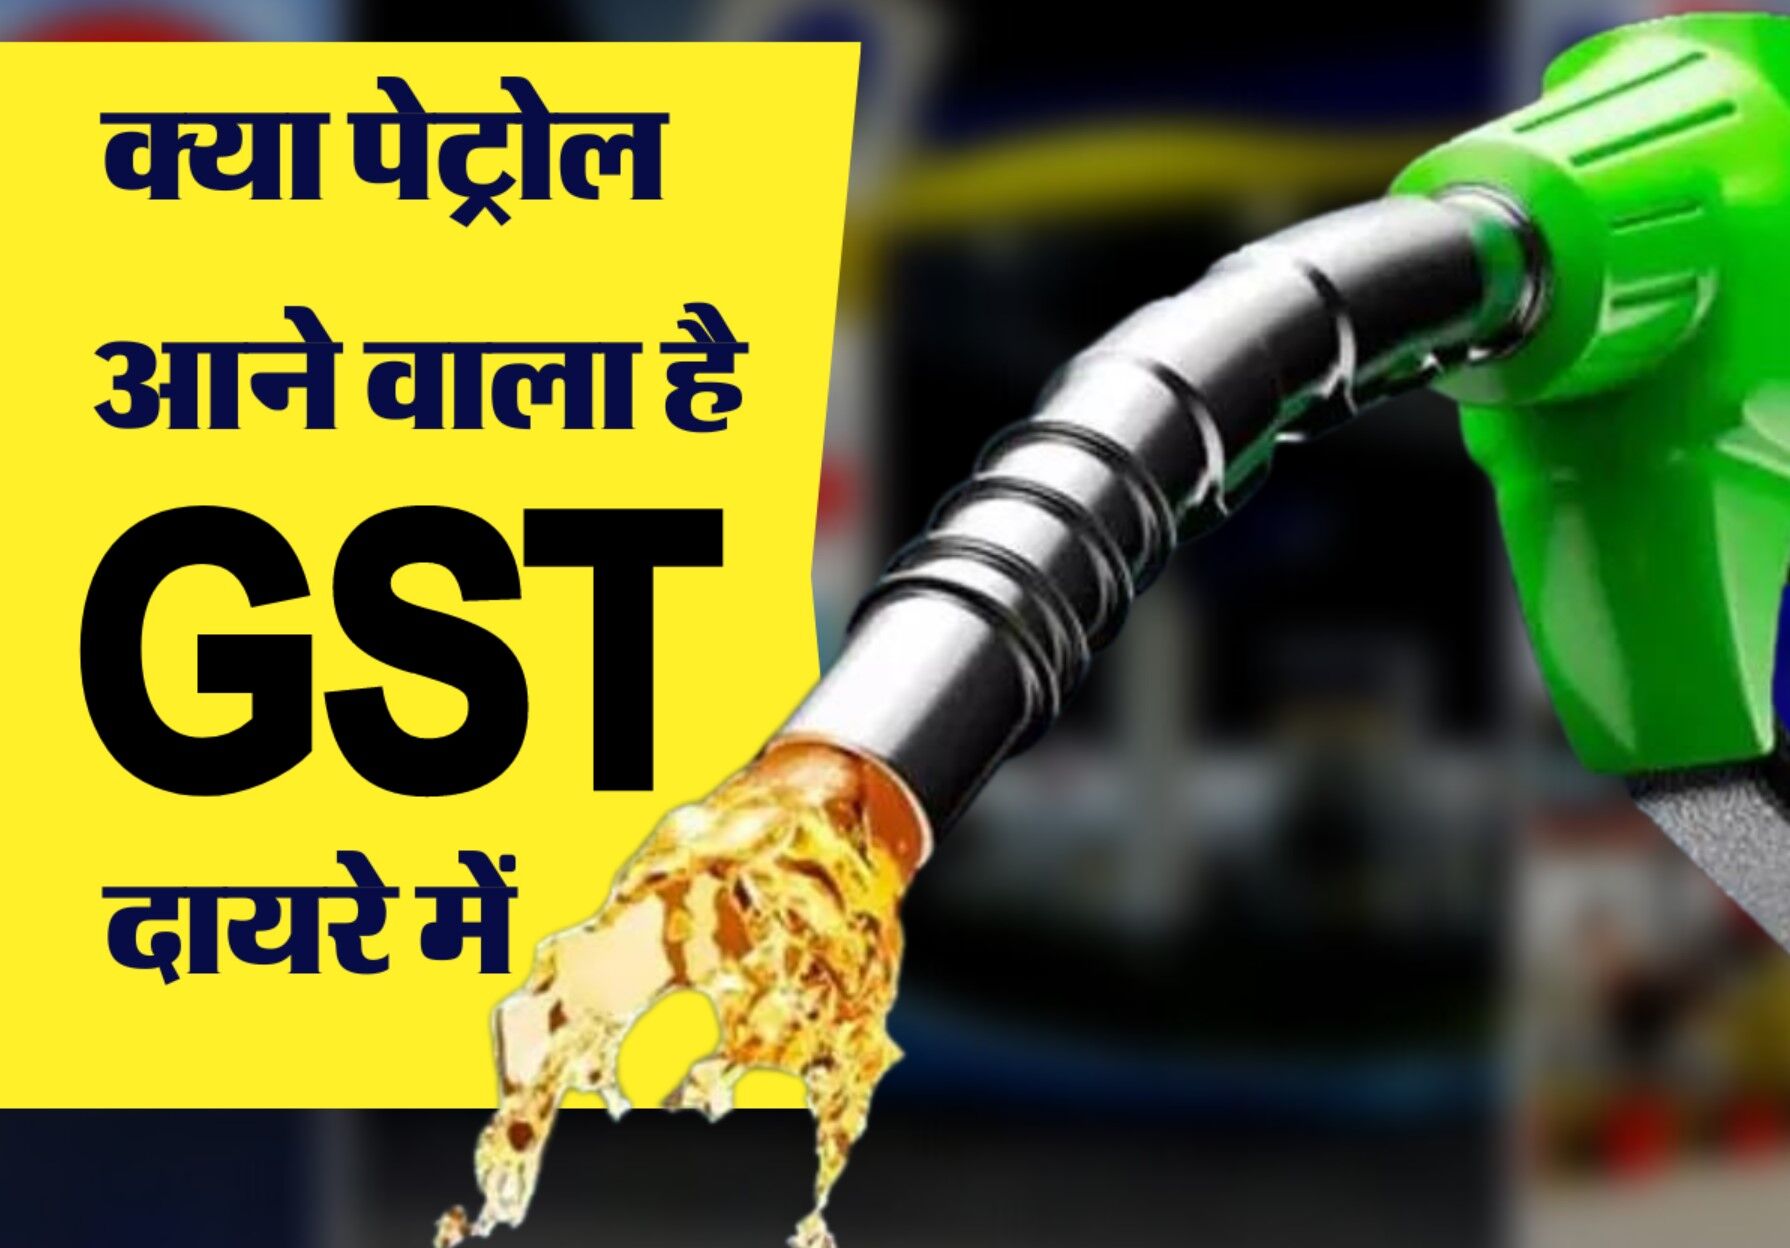 Petrol Under GST: केंद्र सरकार पेट्रोल-डीजल को जीएसटी के दायरे में लाने को तैयार, अब राज्यों की बारी:जानिए क्या होगा आपकी जेब पर असर